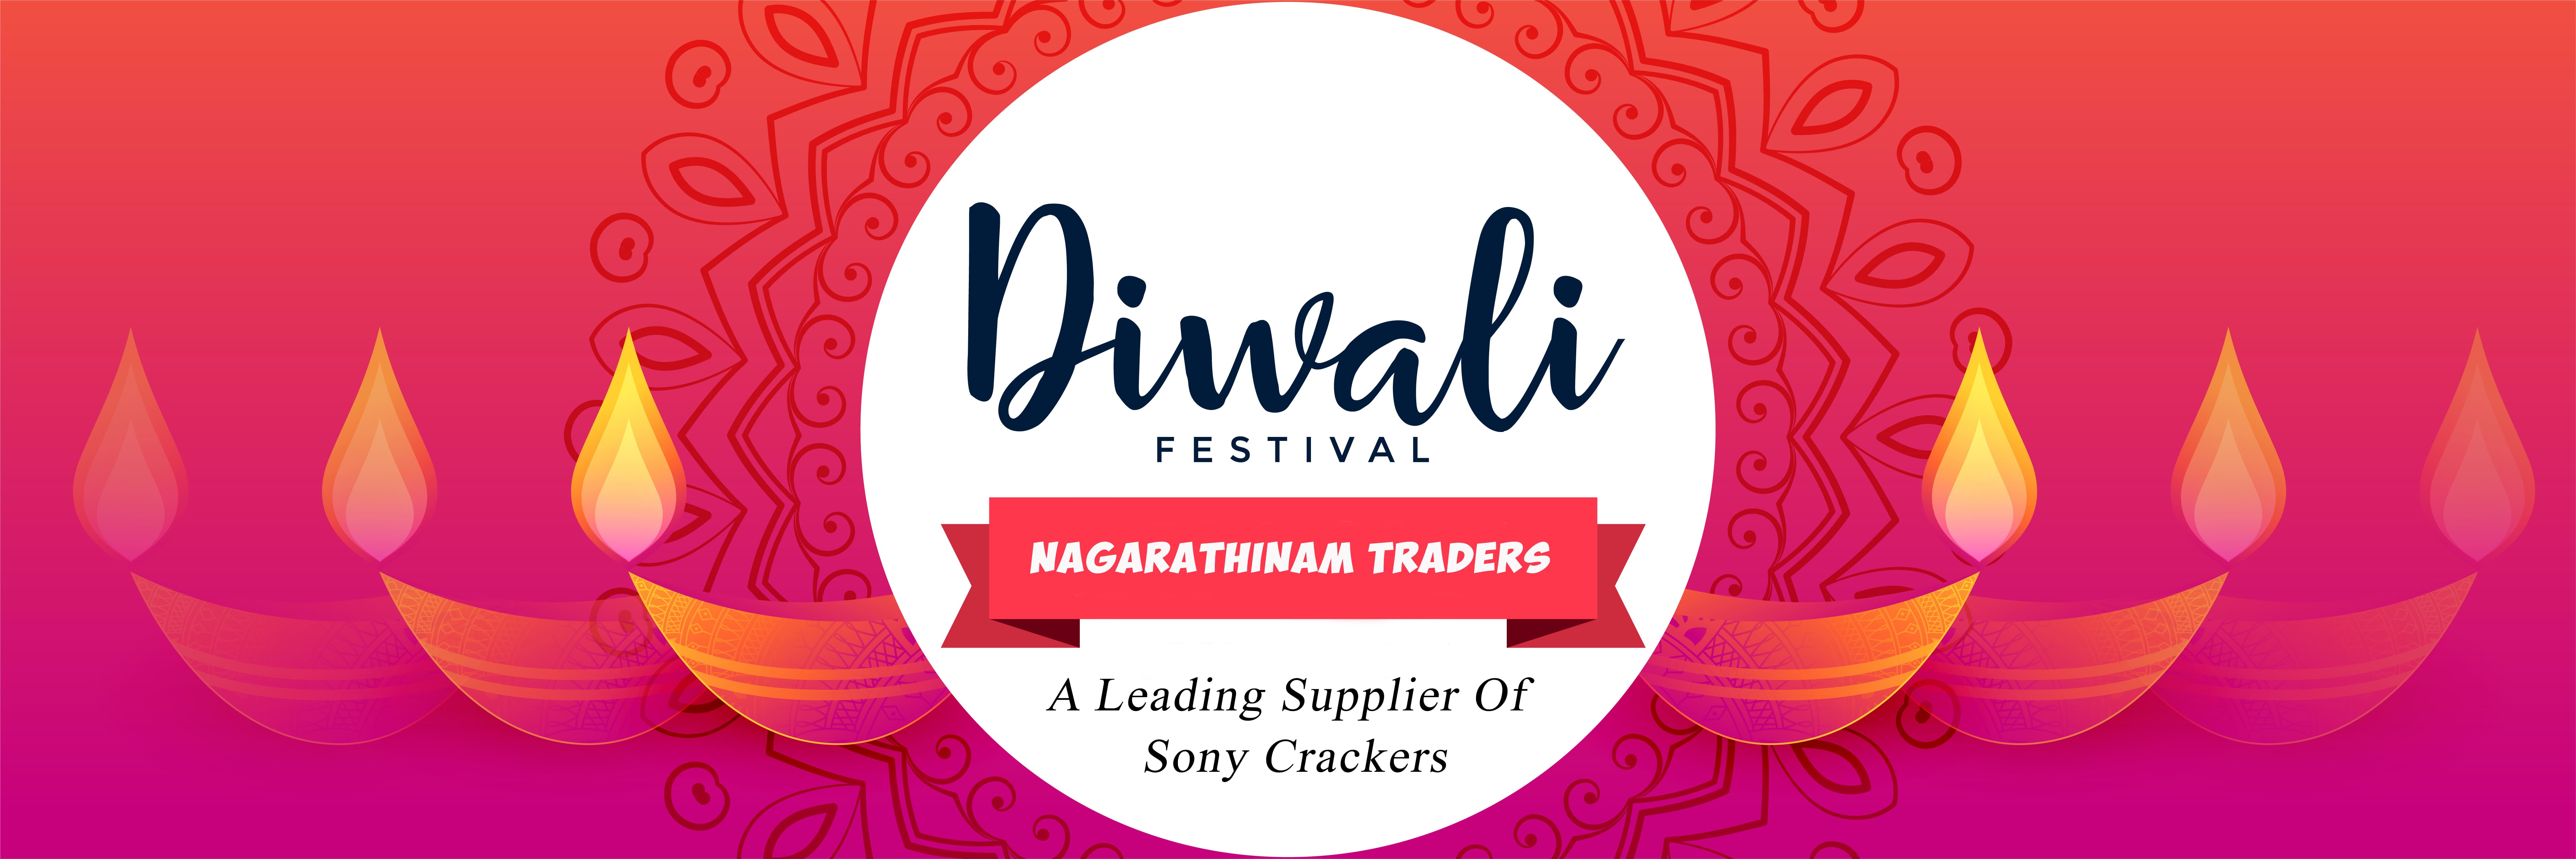 Nagarathinam Traders